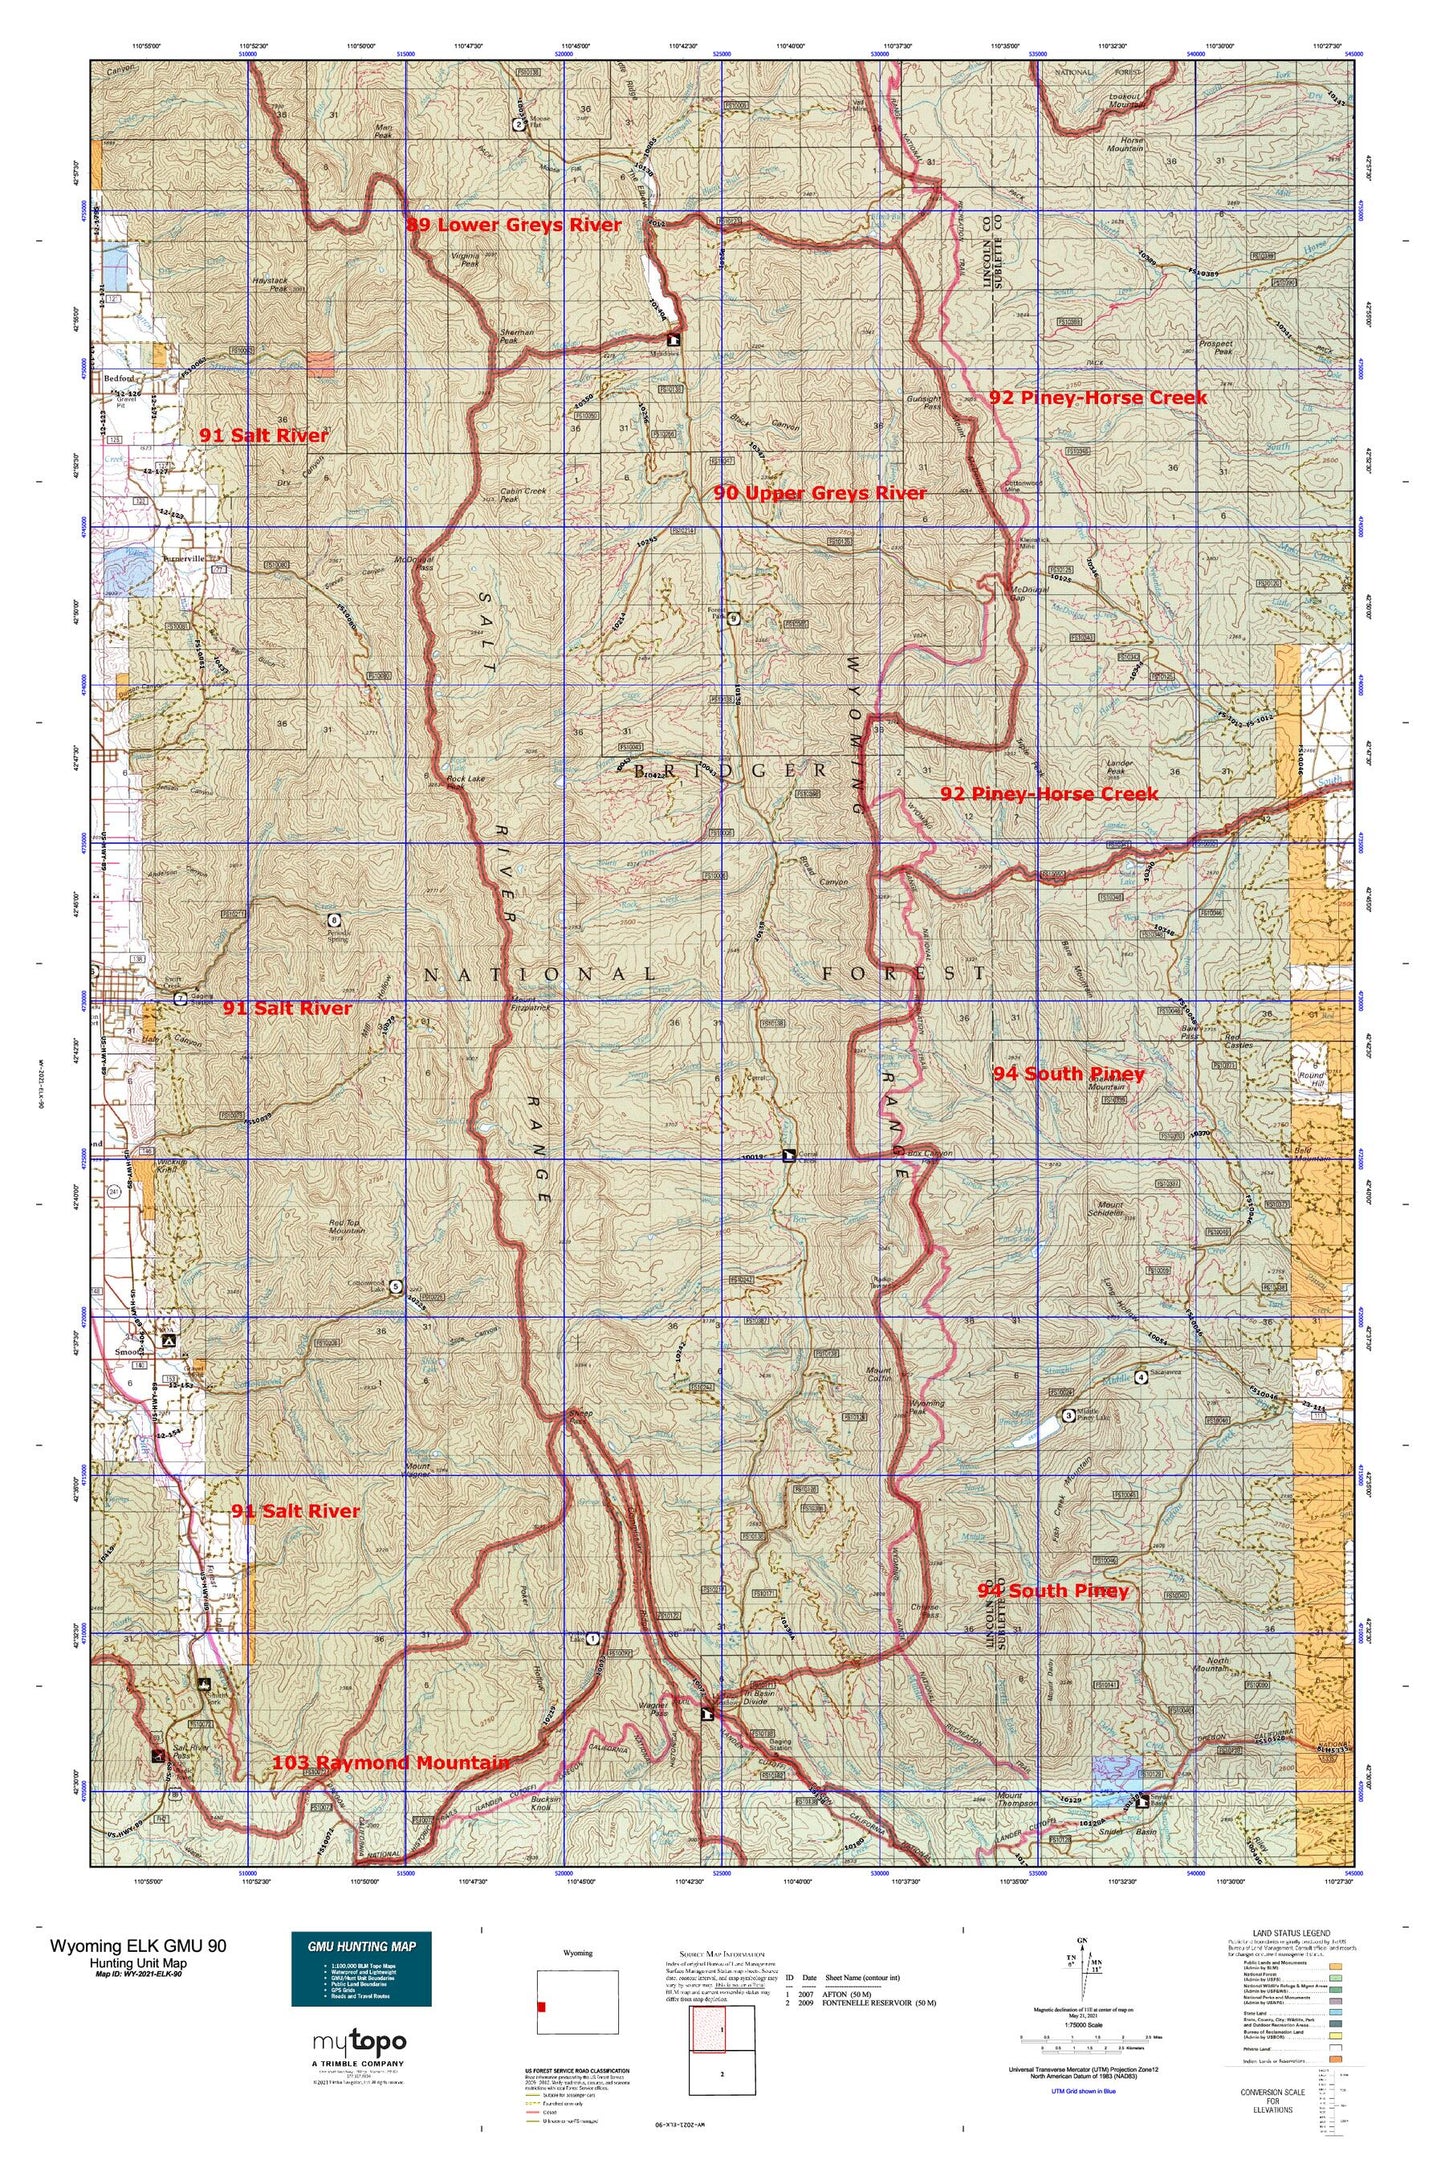 Wyoming Elk GMU 90 Map Image